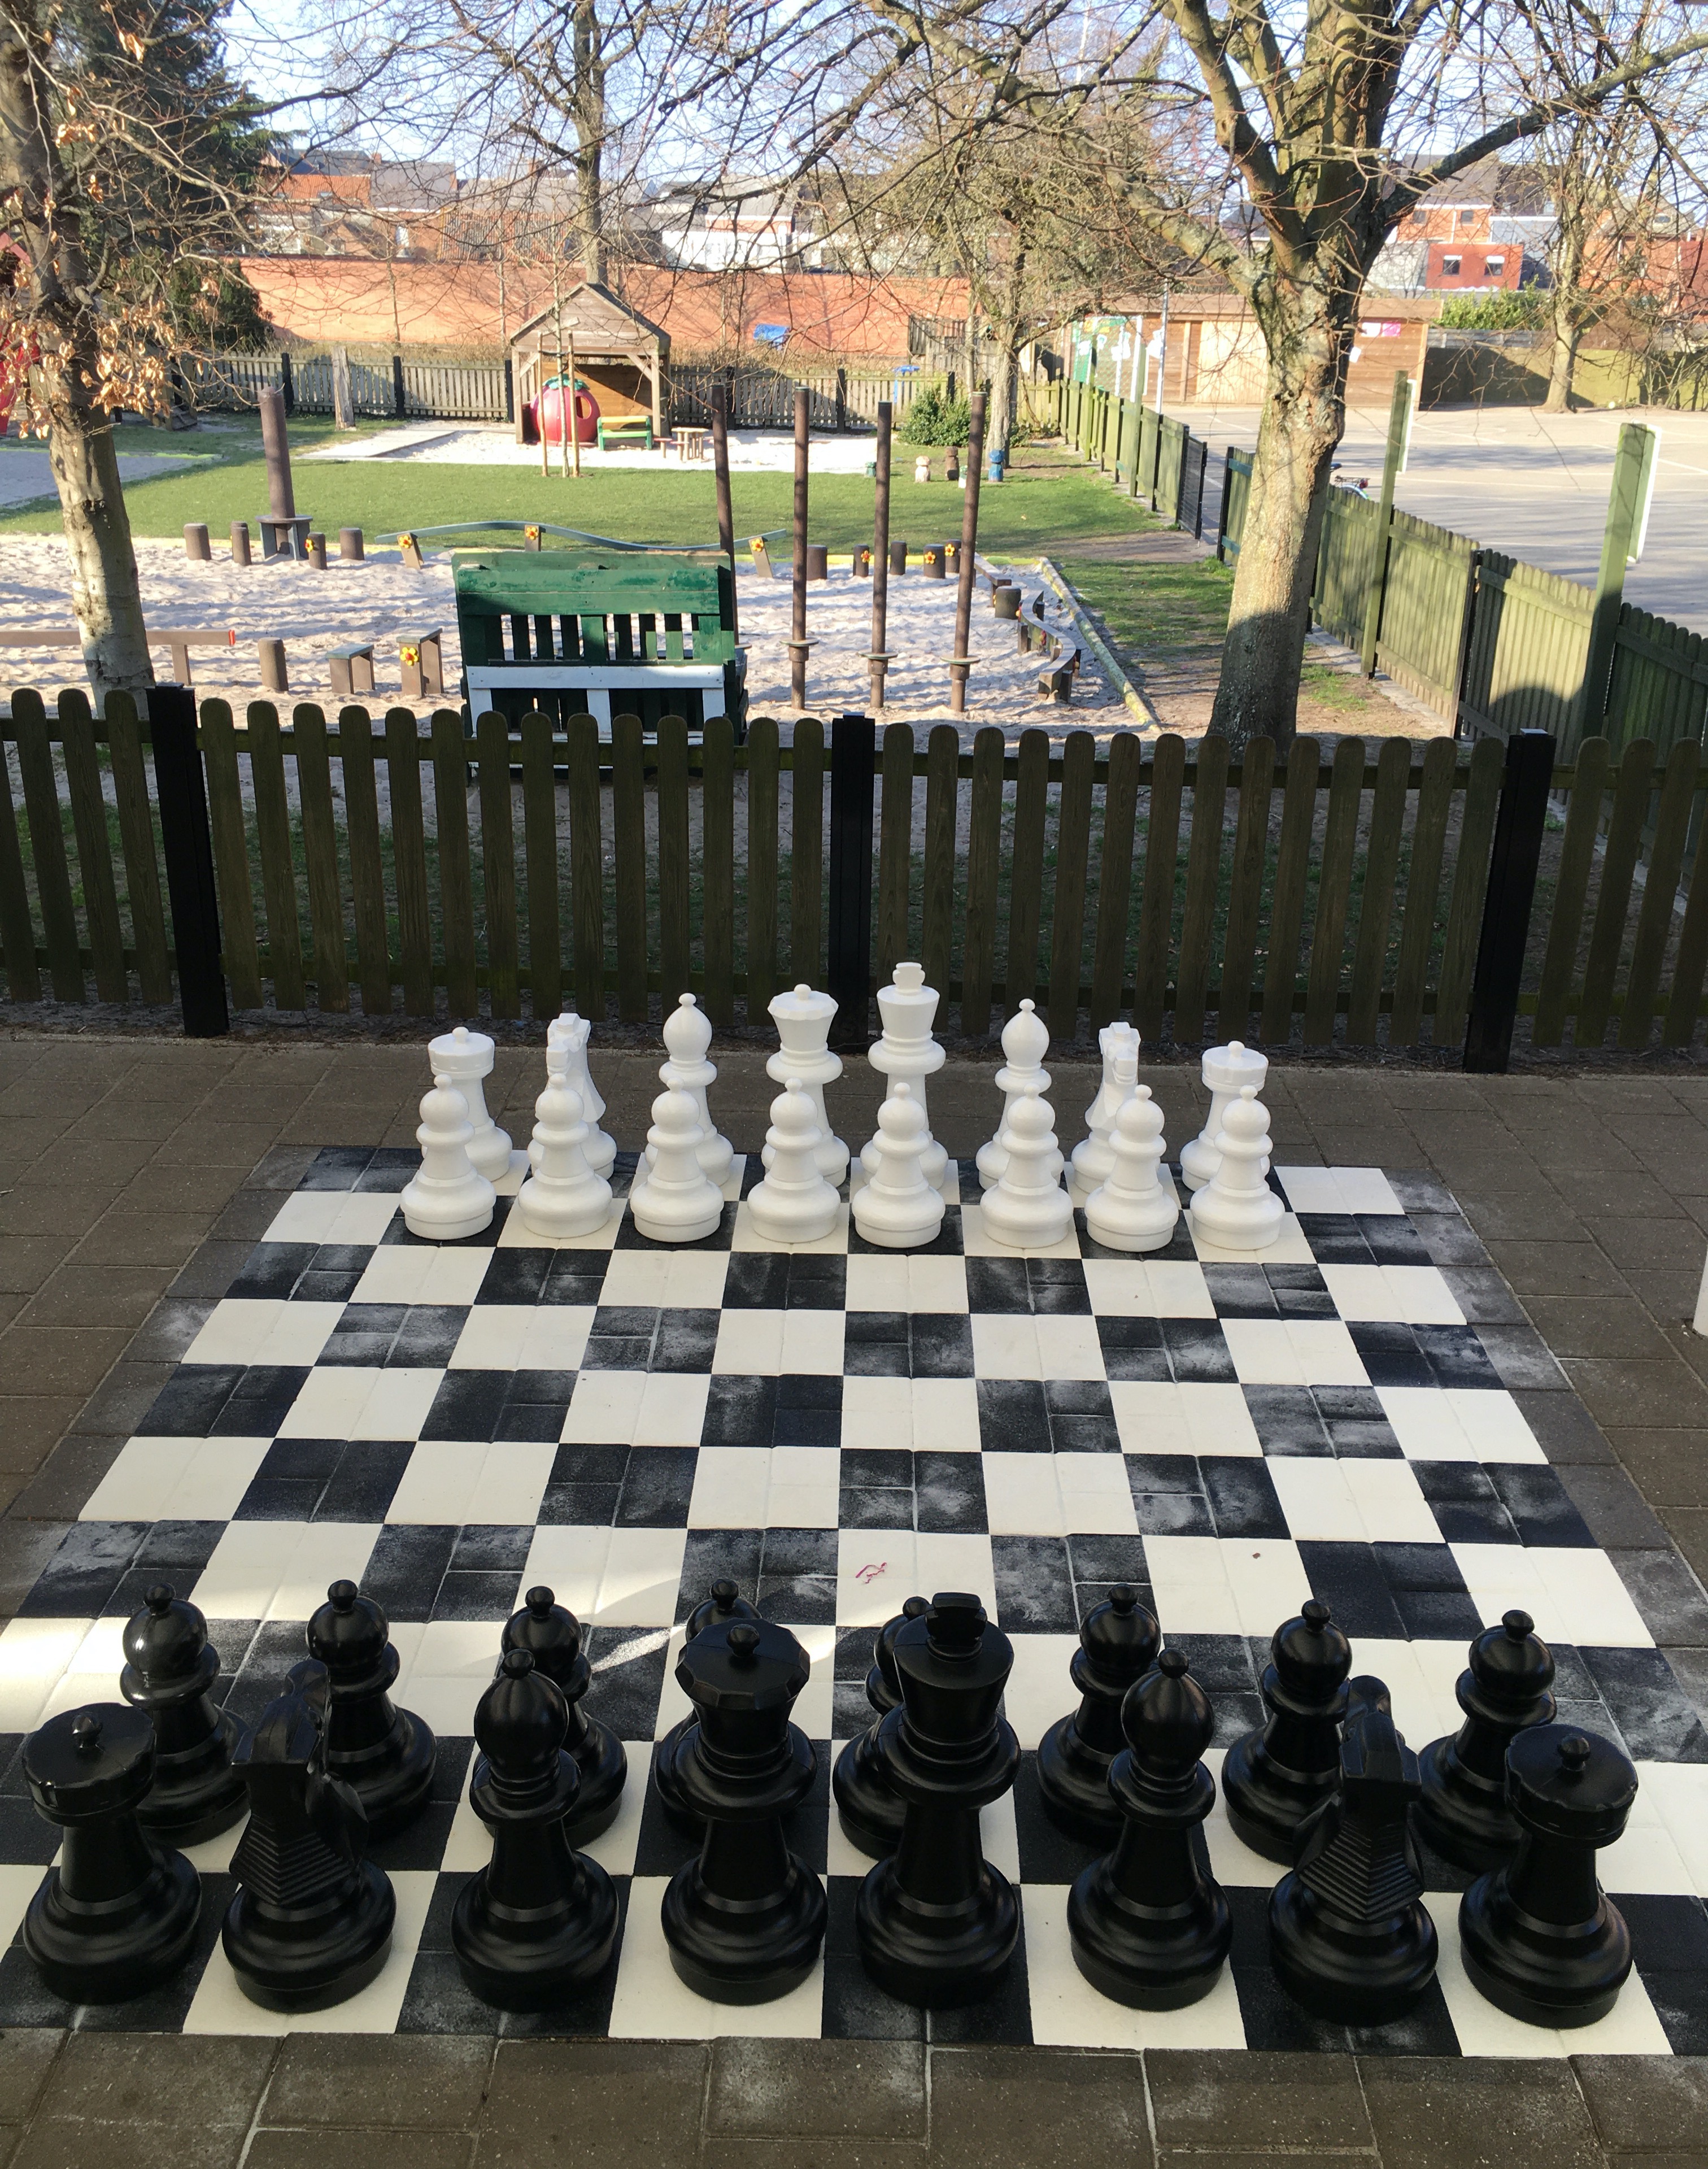 bewegend-leren-schaakspel-damspel-honderdveld-eduplay